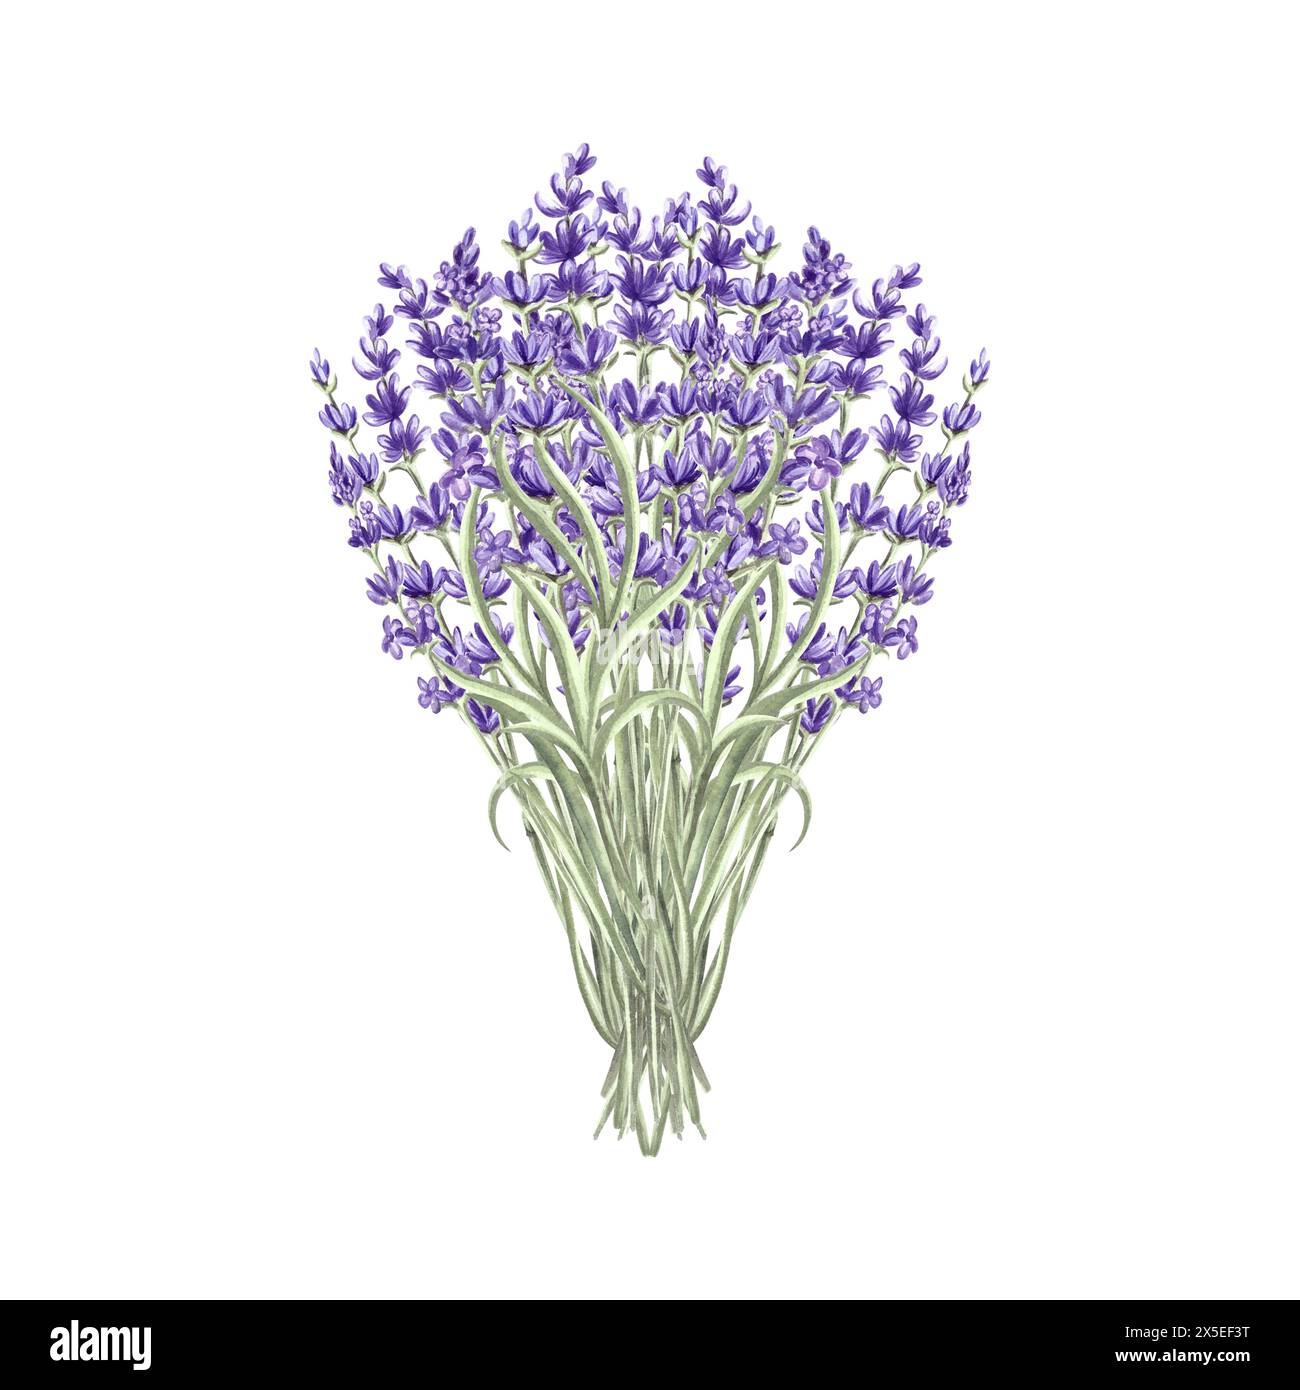 Fleurs de lavande bouquet violet, illustration d'aquarelle de printemps. Bouquet floral de provence dessiné à la main isolé. Modèle de dessin botanique pour carte, imprimer Banque D'Images